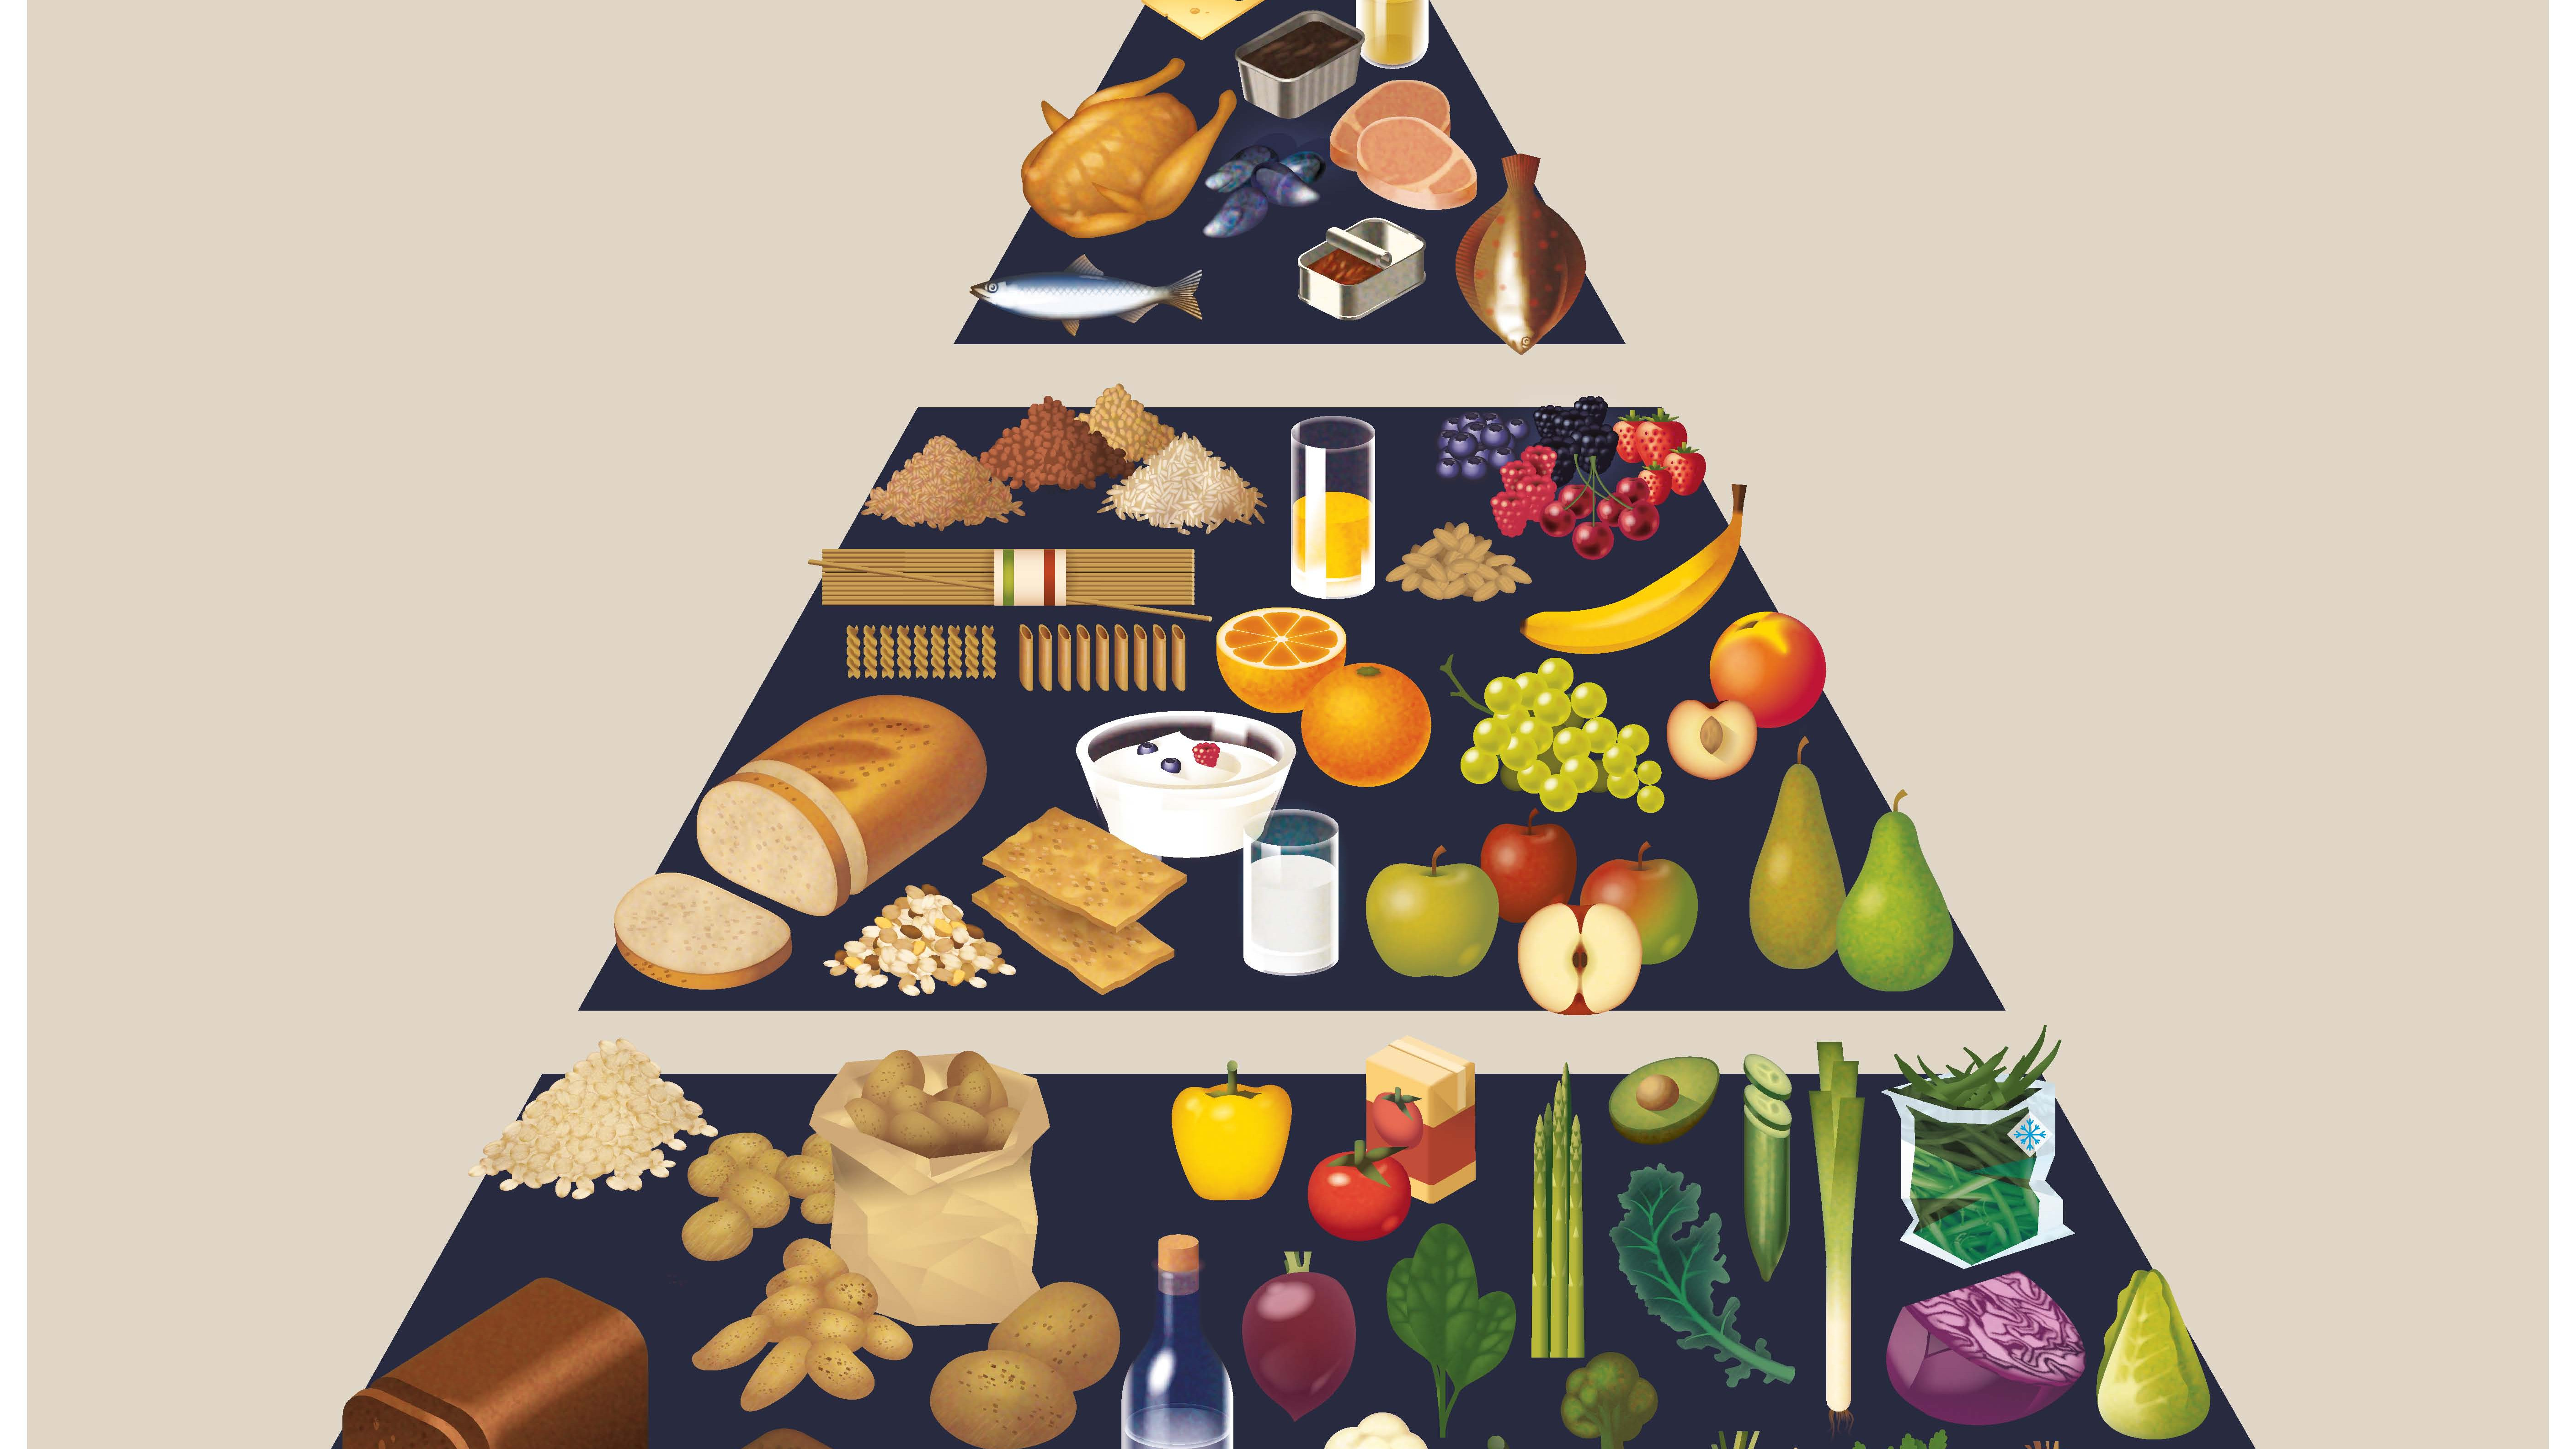 Madpyramiden blev oprindeligt lanceret af FDB (Coop) i 1976 for at vise danskerne, hvordan man spiser sundere og varieret ved at spise mest af varerne fra bunden, mindre fra midten og mindst fra toppen. Nu viser nye beregninger, at man kan spare 25 procent af CO2-udledningen fra sin mad ved at følge kostrådene i Madpyramiden